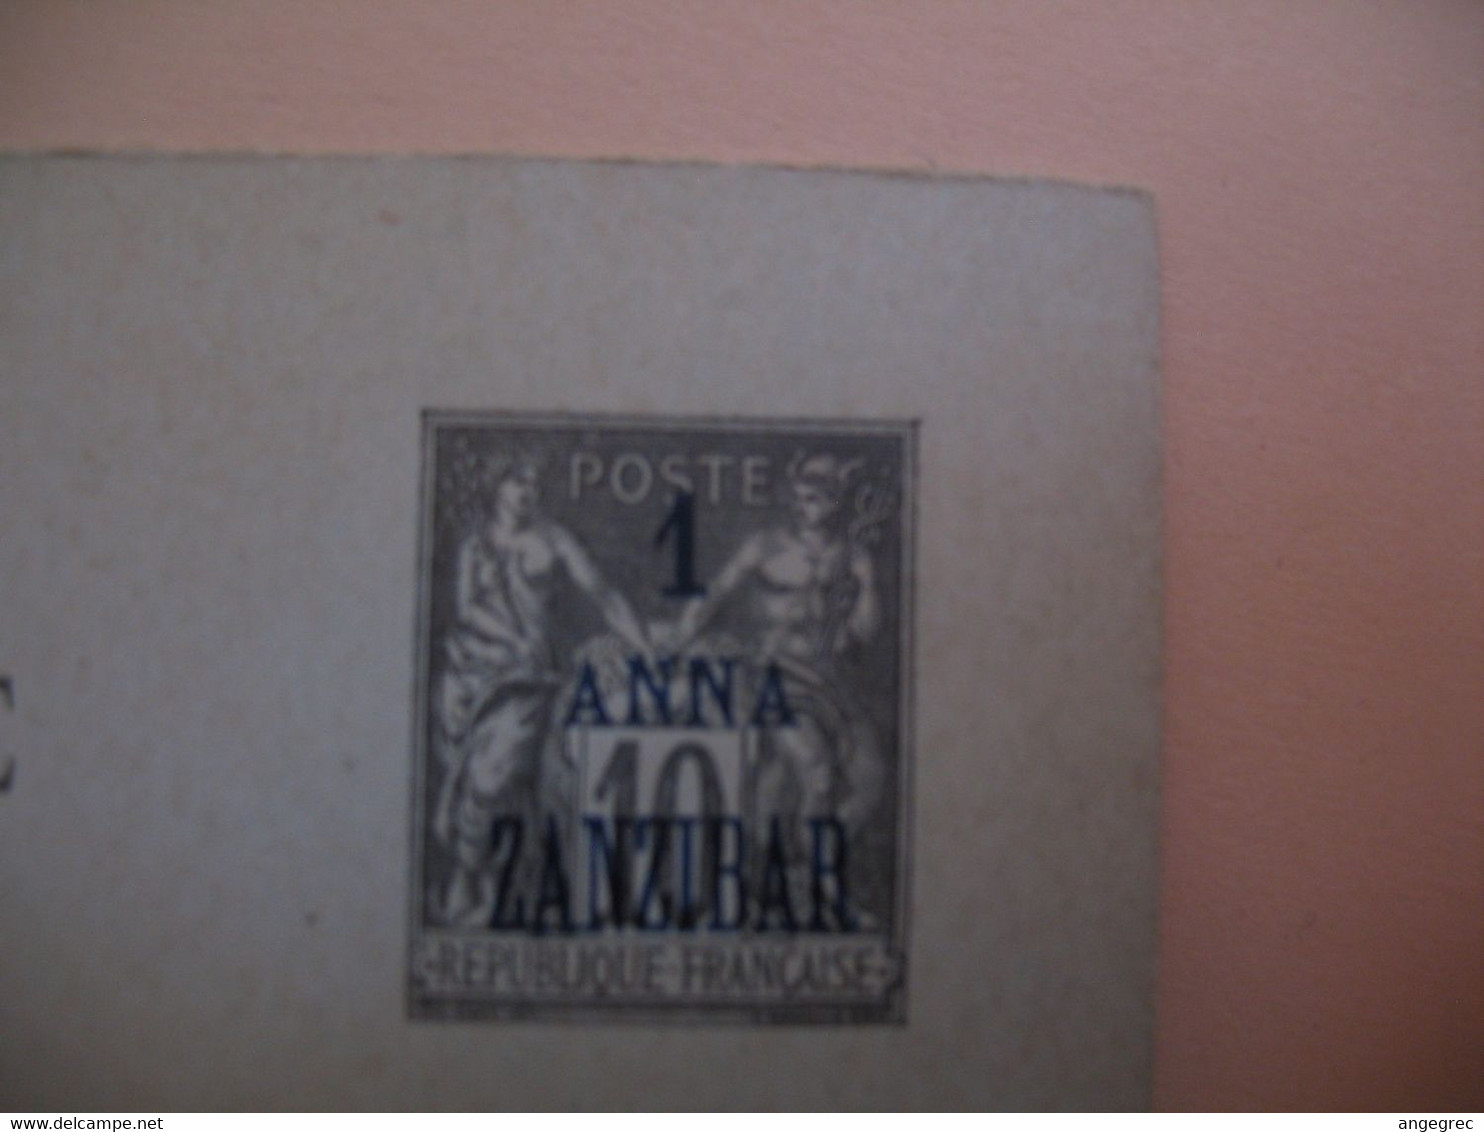 Entier Postal  Carte Postale Avec Réponse Payée Zanzibar 1 Anna Zanzibar Type Groupe  Sur  10c   Voir Scan - Lettres & Documents